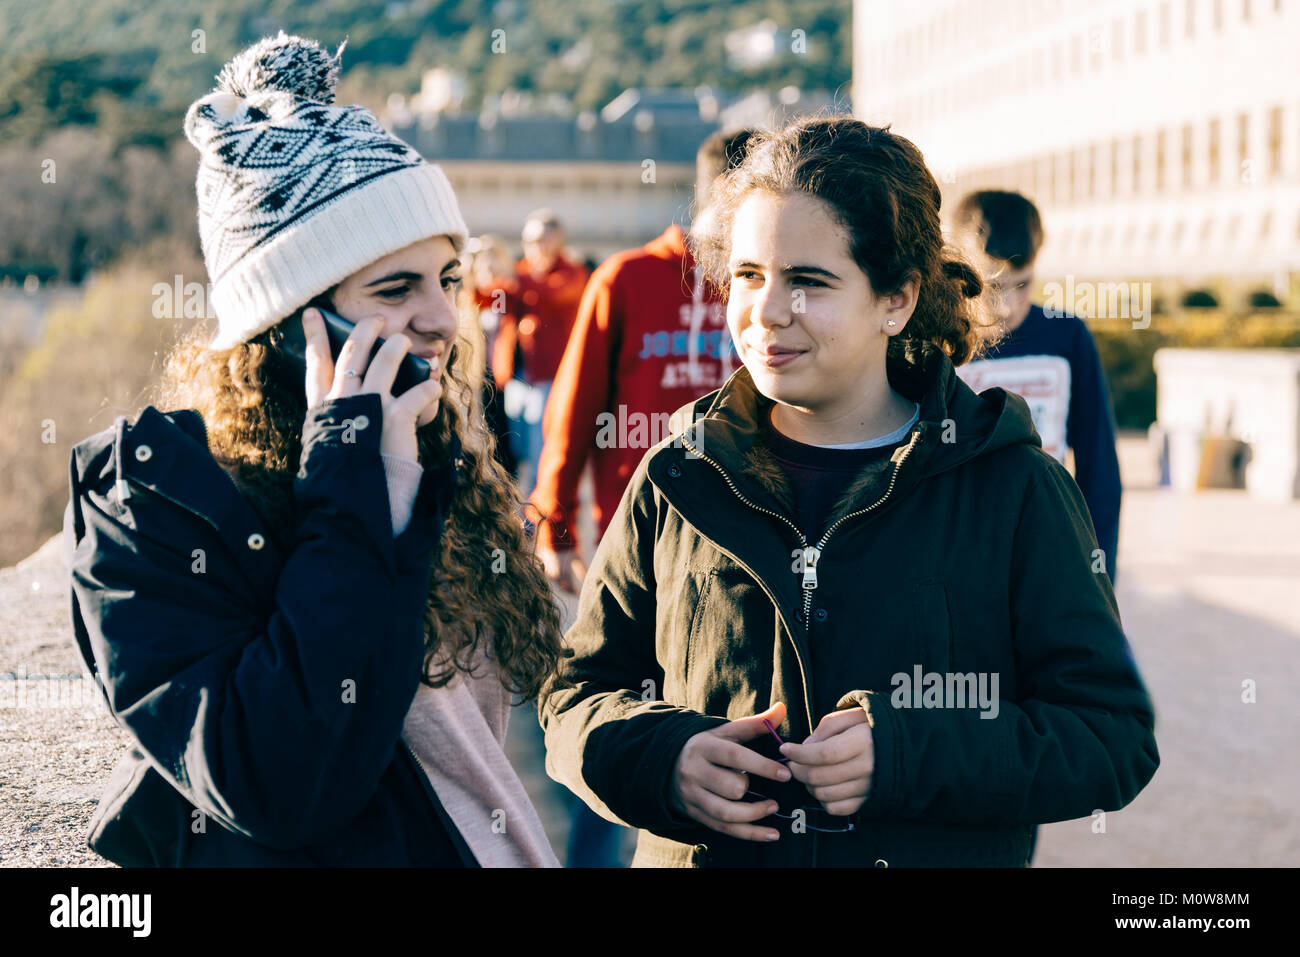 Felice ragazze adolescenti su di essi in knit hat texting con un telefono cellulare in un punto di riferimento. Concetto stare insieme Foto Stock